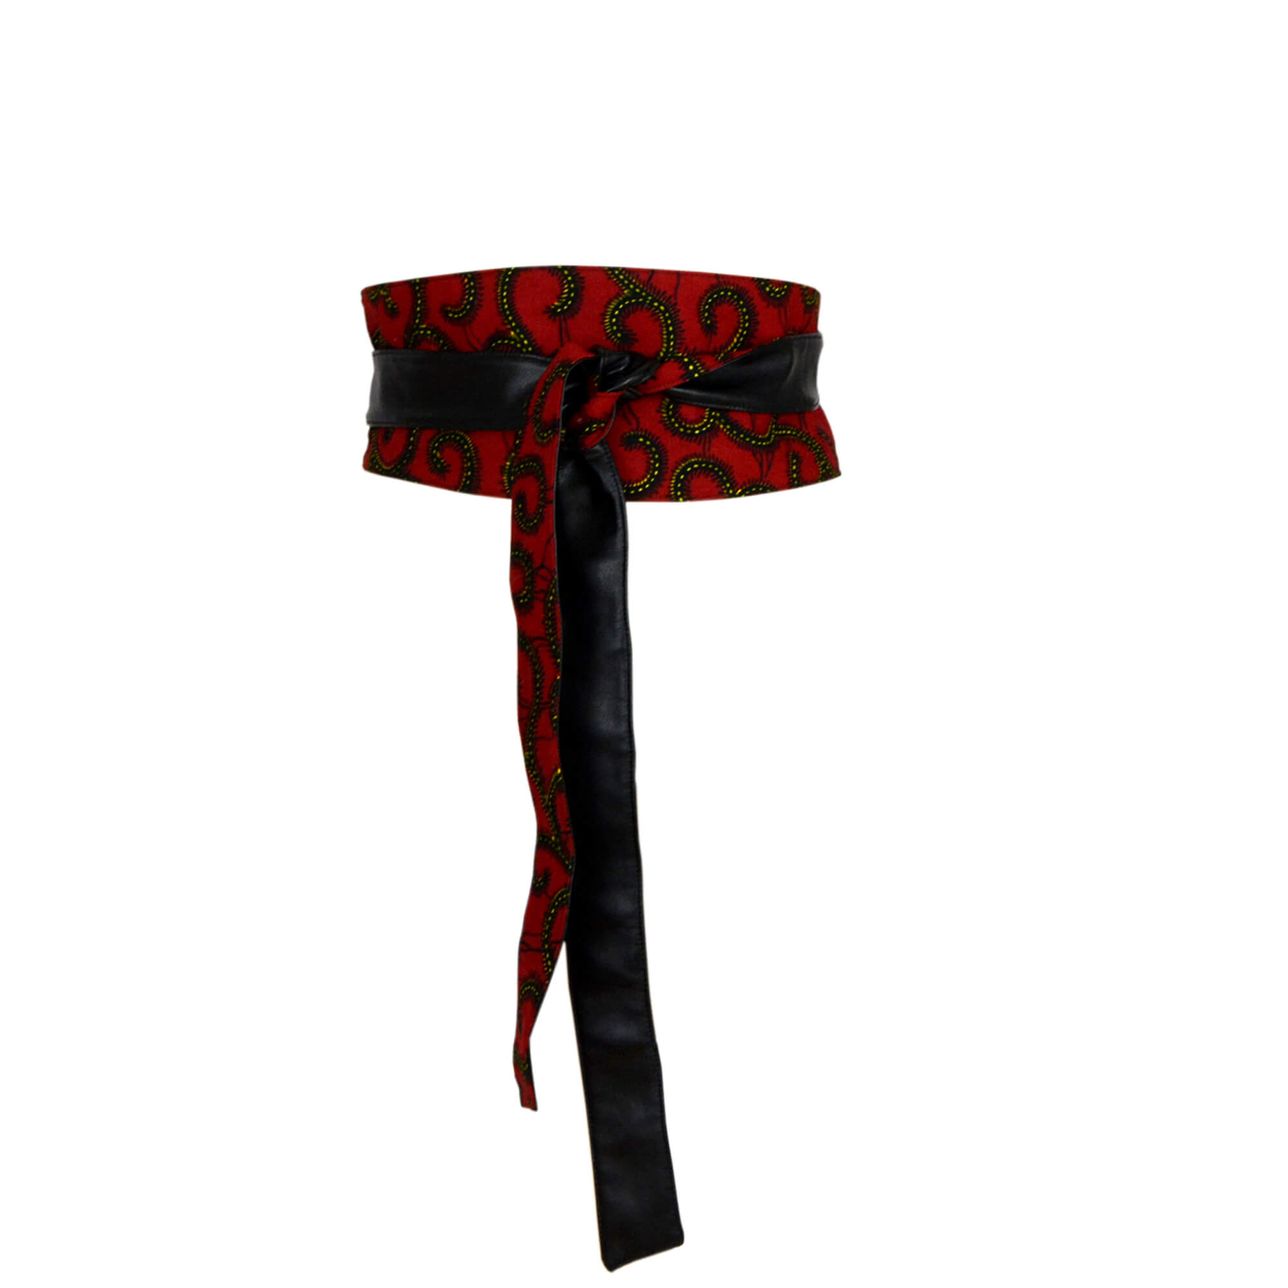 Sash High Waist Belt, Obi Belt - Red Black African Print